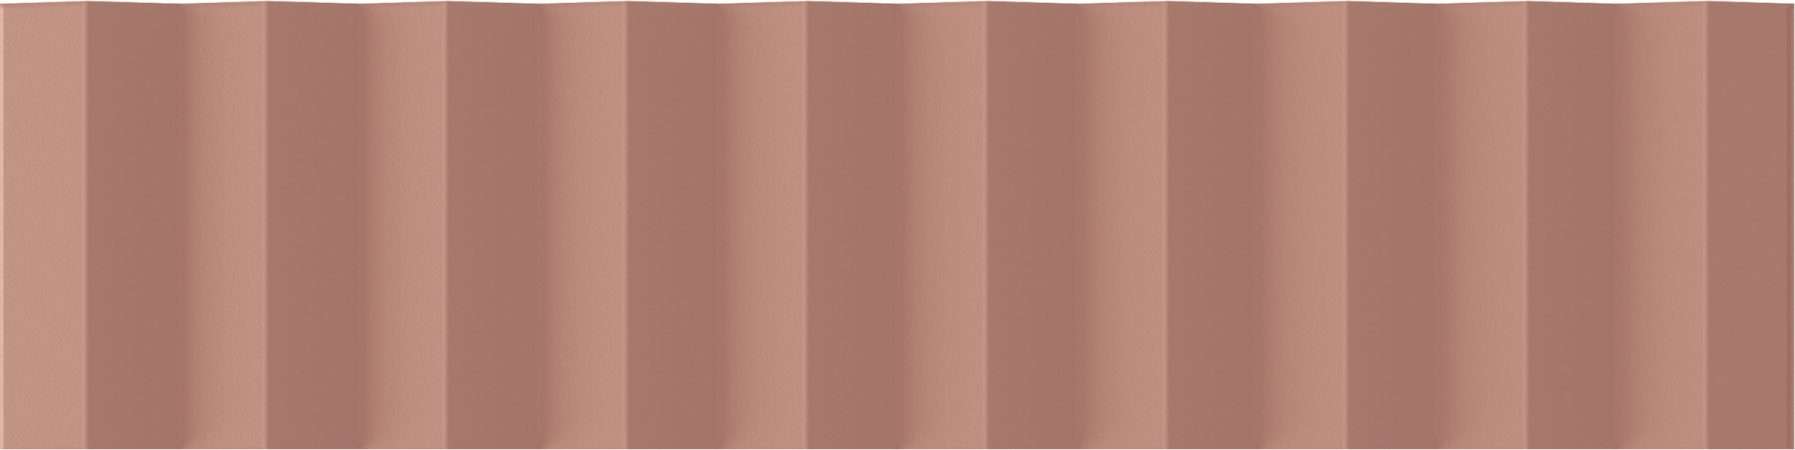 Керамическая плитка Wow Twin Peaks Up Cotto 131545, цвет терракотовый, поверхность матовая 3d (объёмная), под кирпич, 75x300